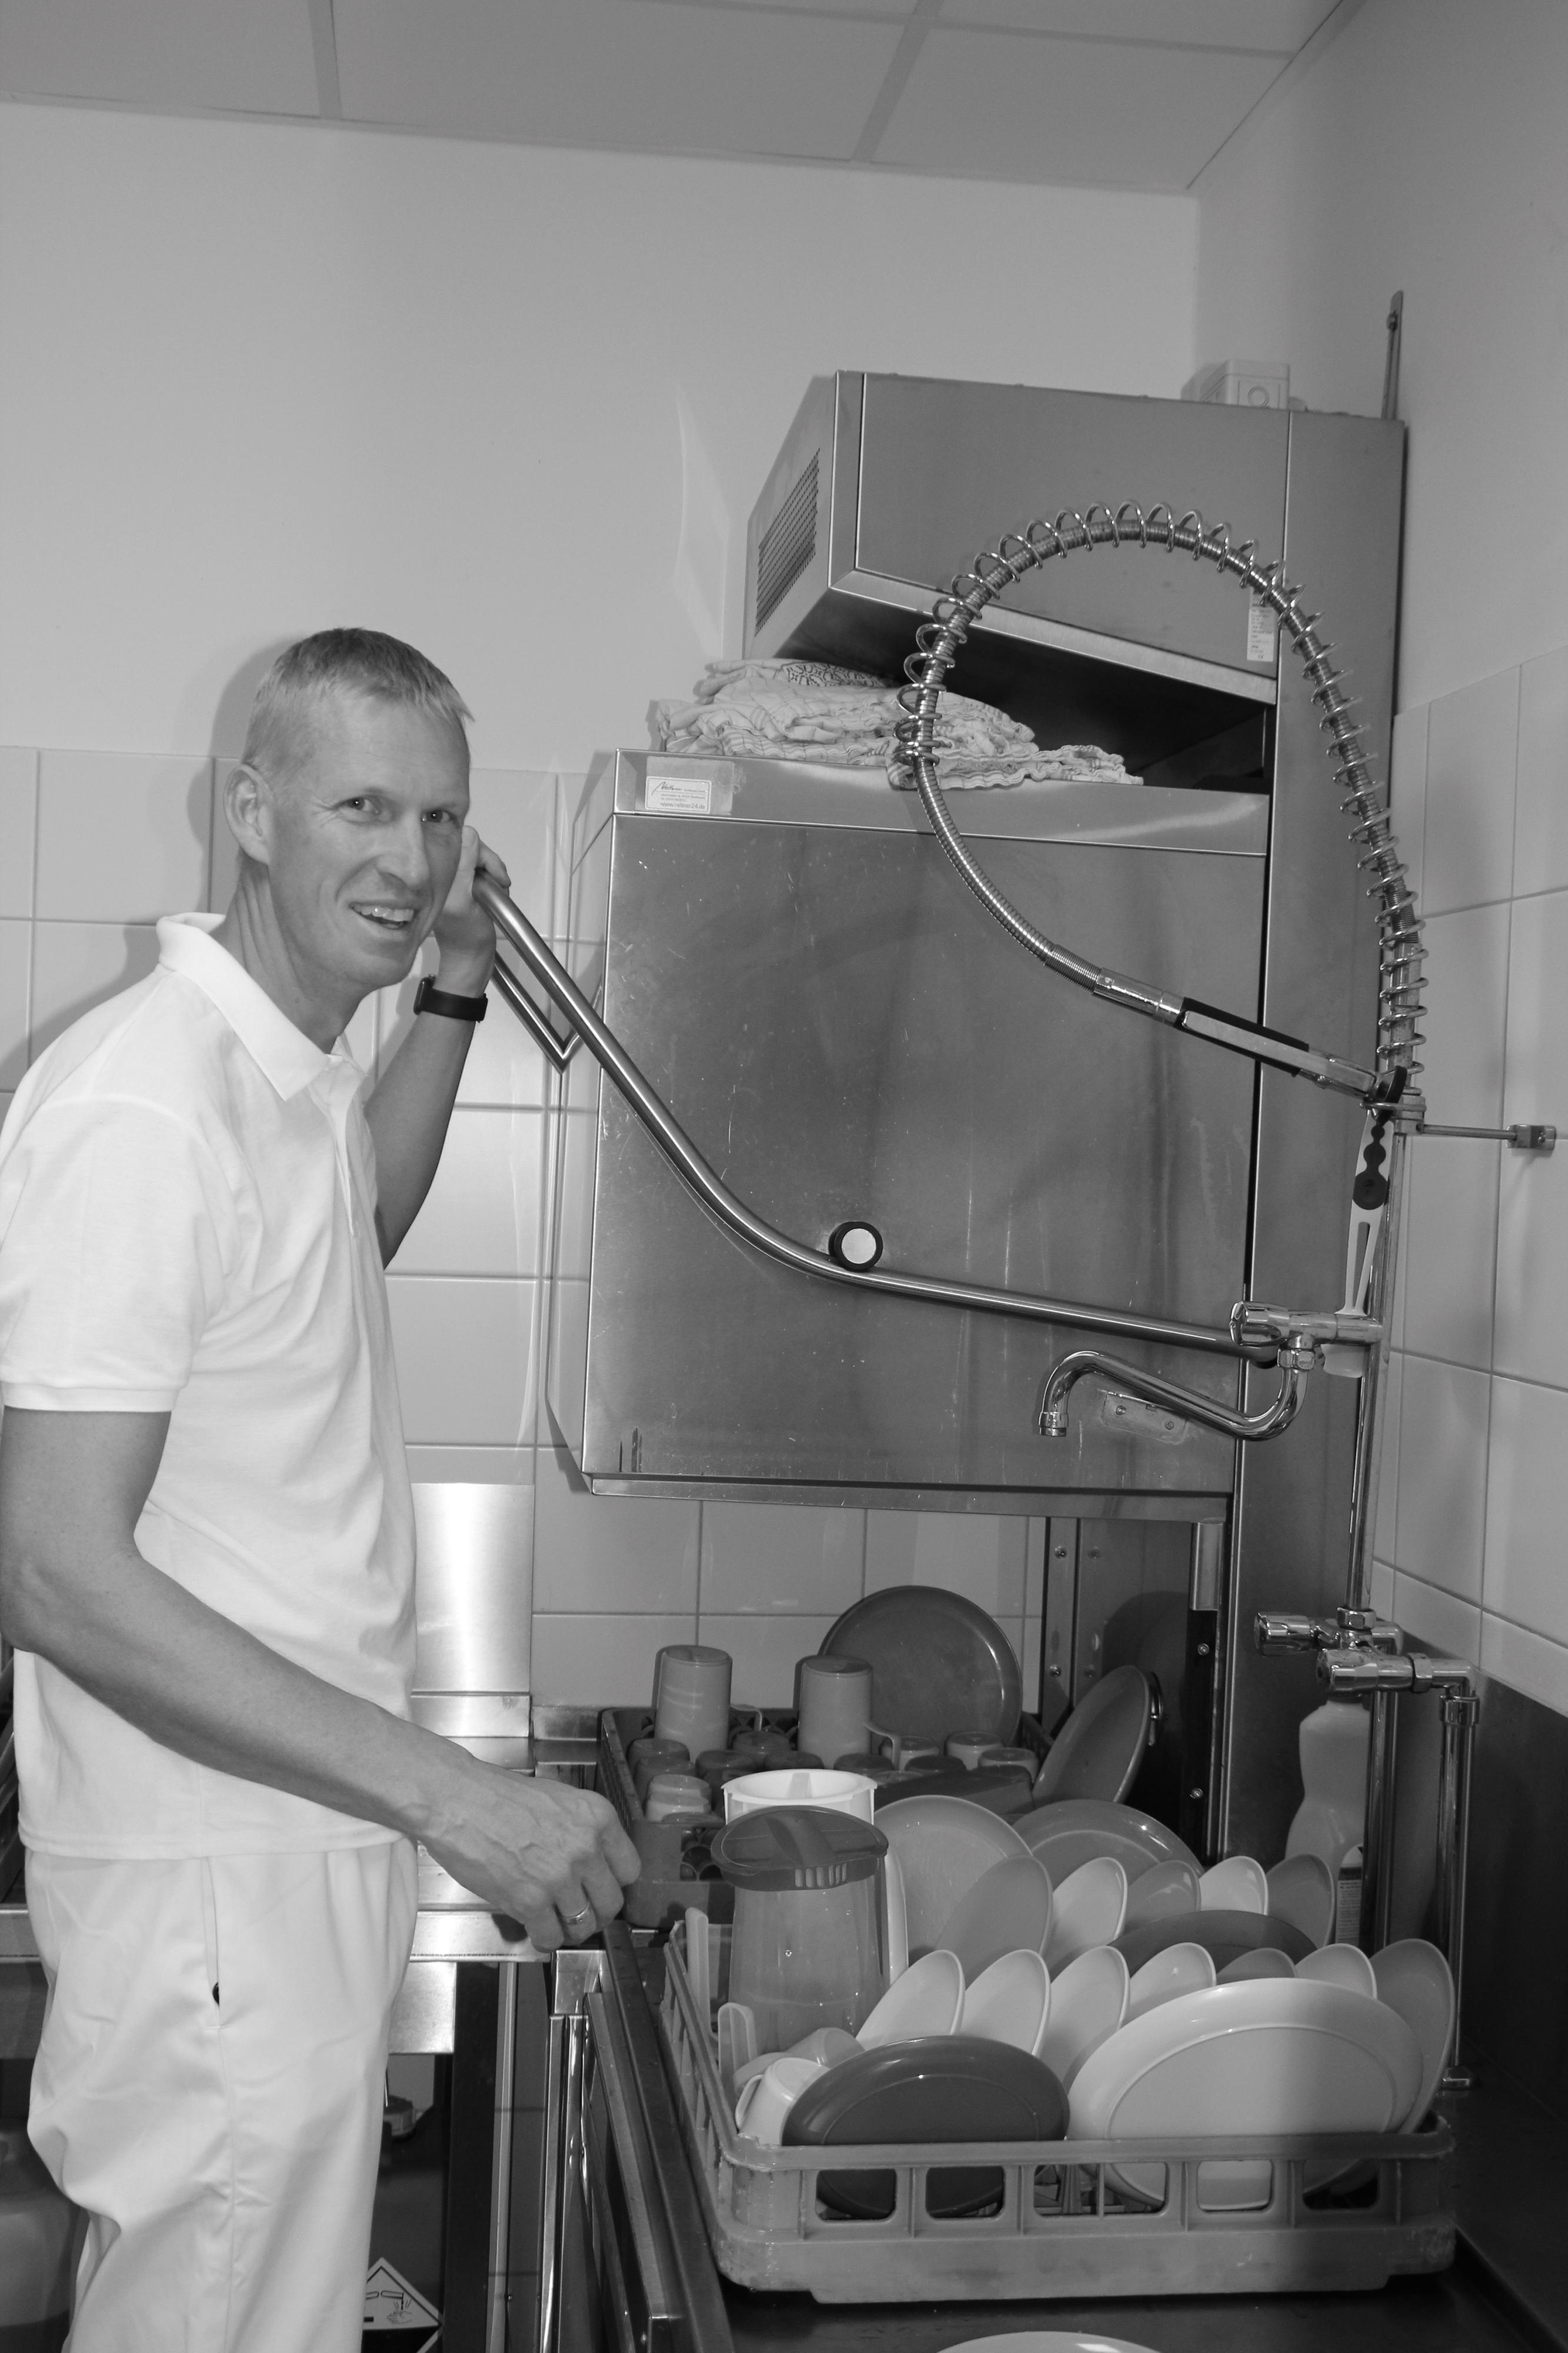 Schwarz-Weiß-Aufnahme: Ein Mann steht vor einer großen Spülmaschine und einem Tablett mit Geschirr.